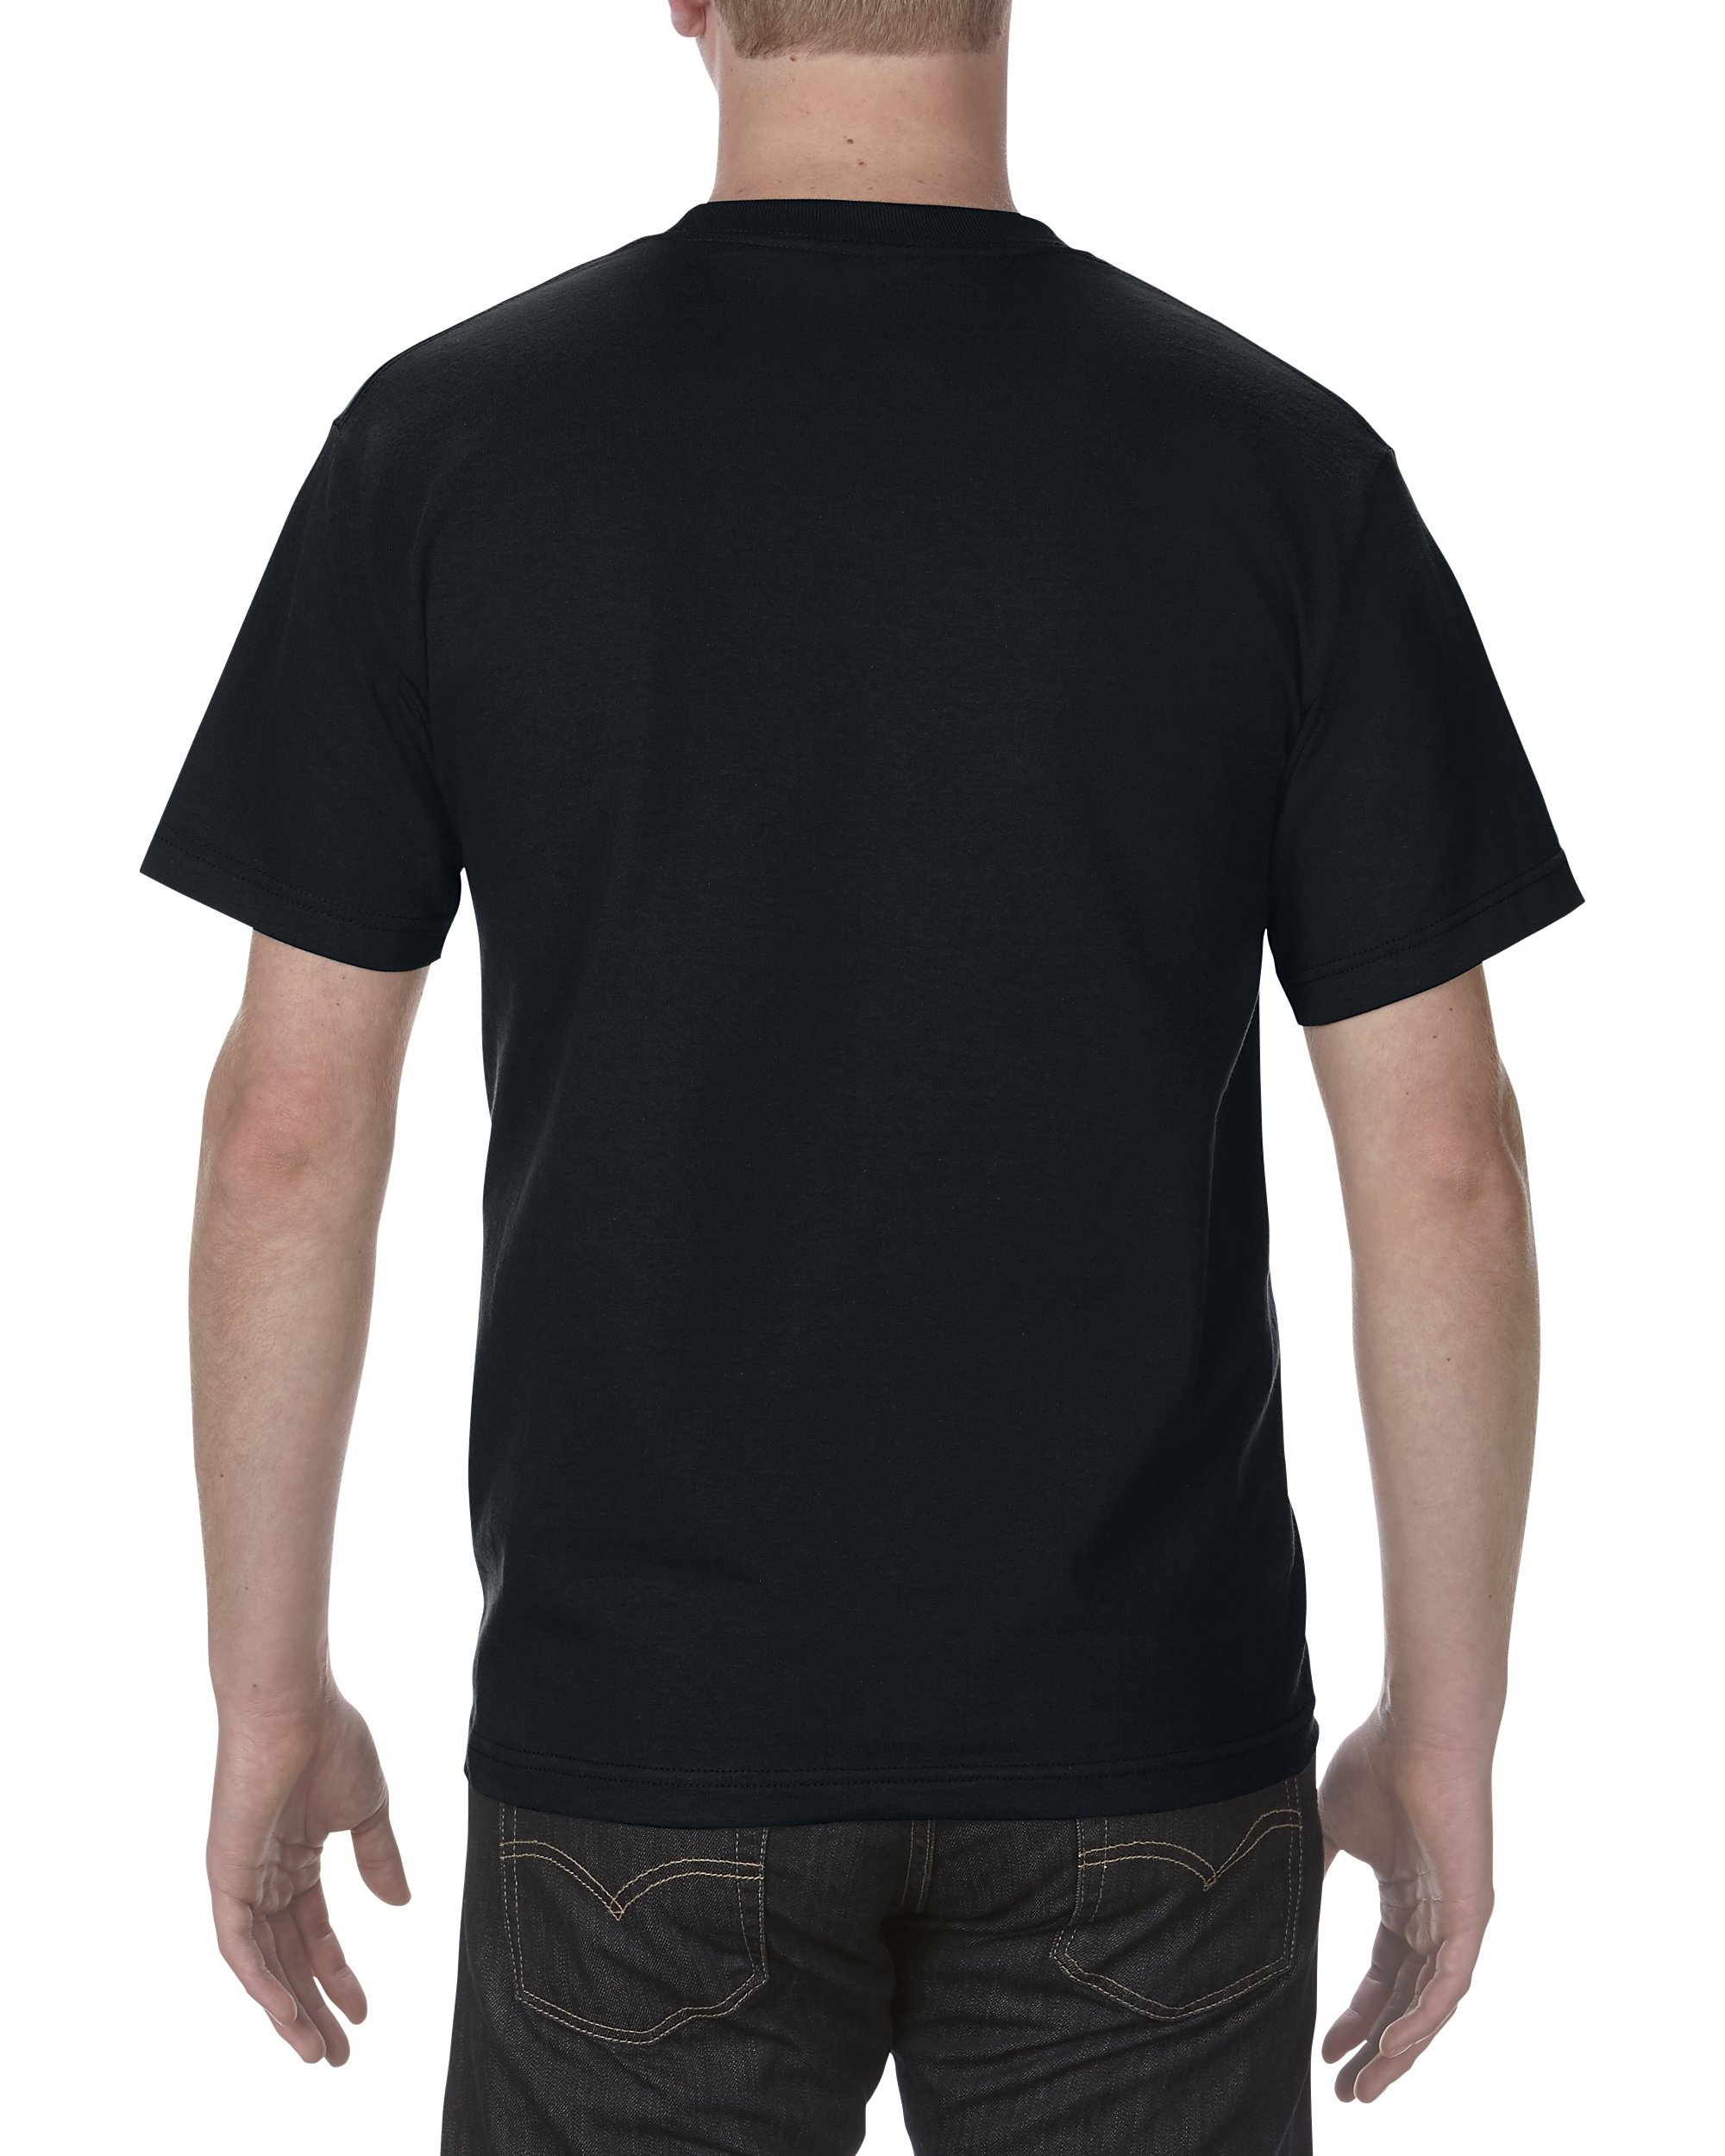 AlStyle Apparel AAA Plain Blank Men's Short Sleeve T-Shirt Style 1301 Crew Tee